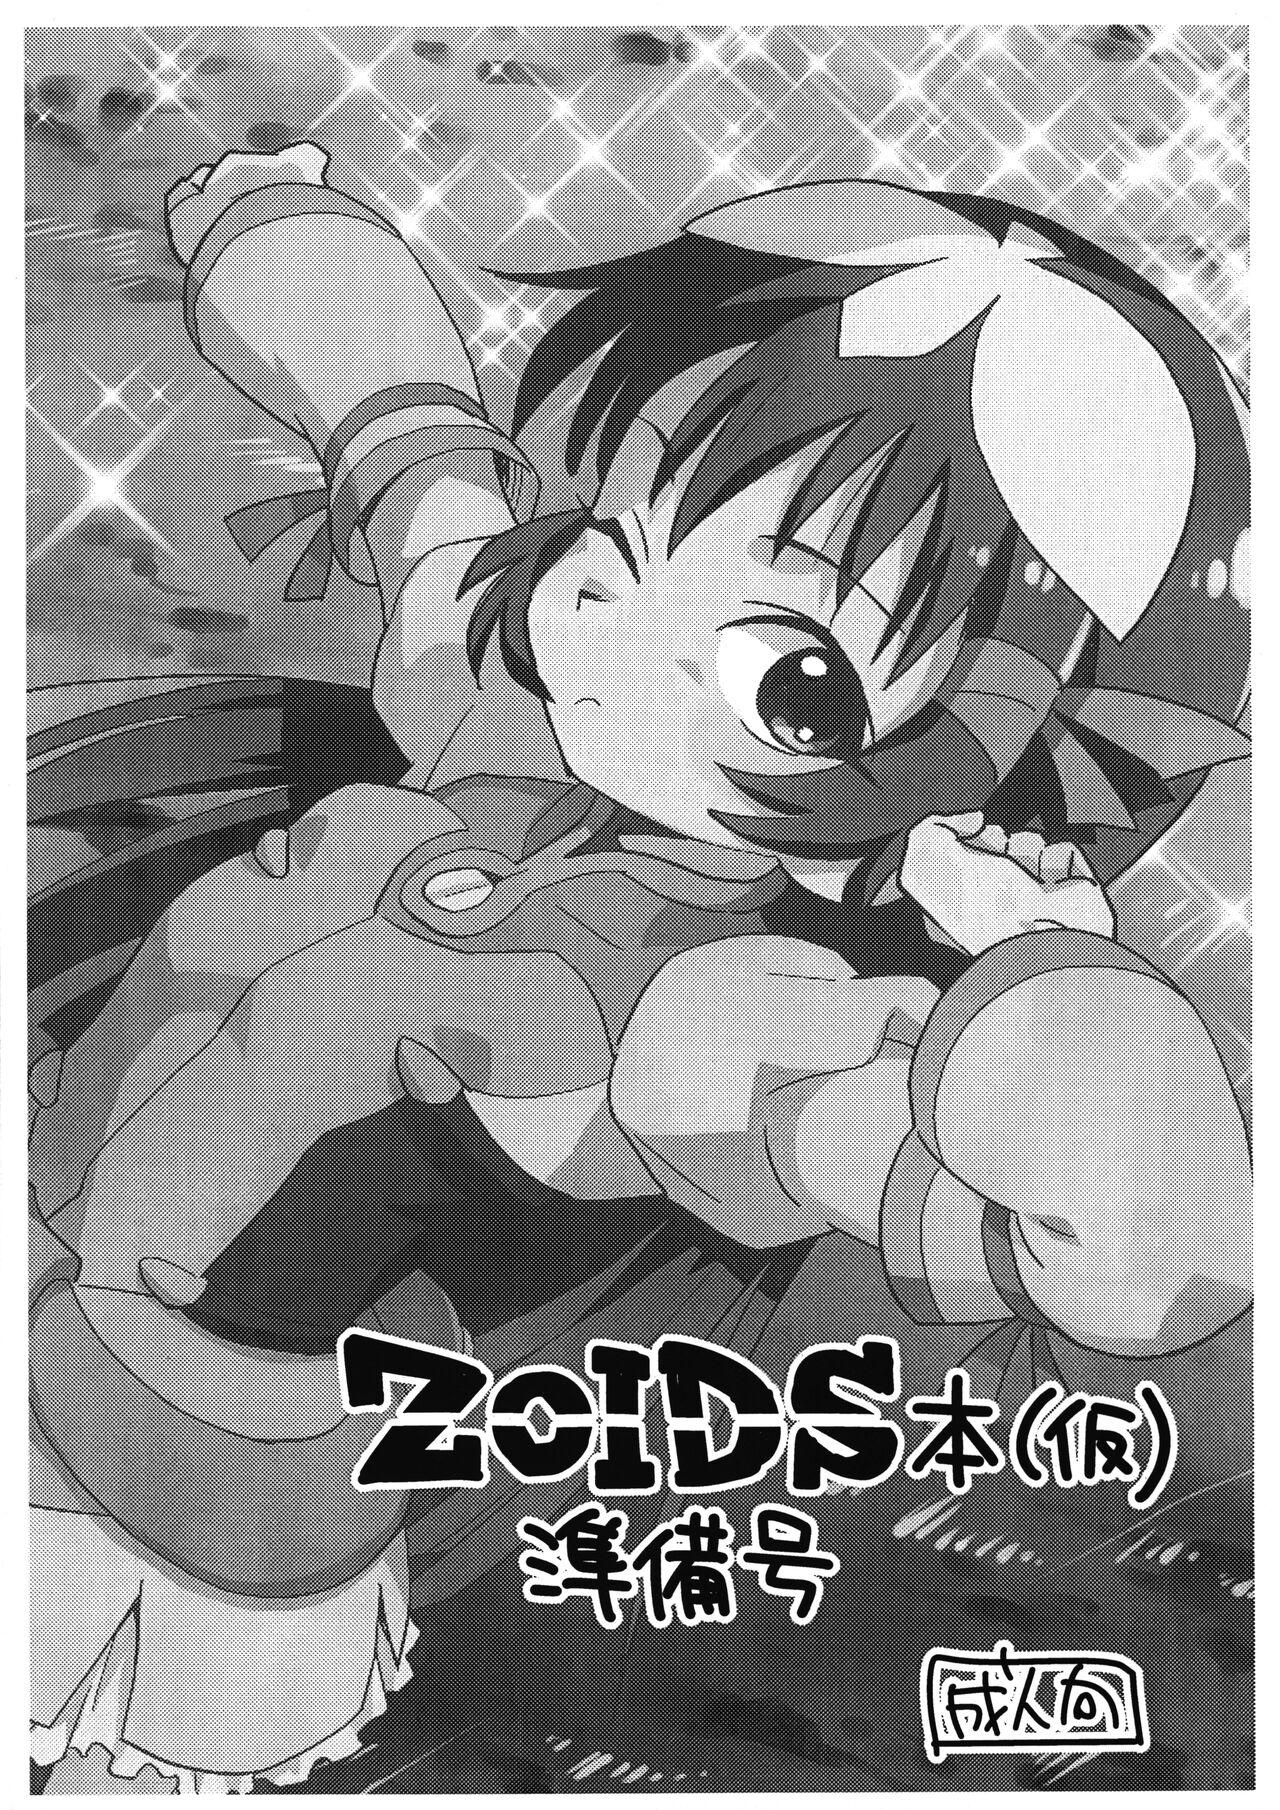 Internal (Puniket 47) [Okosama Lunch (Nishinozawa Kaorisuke)] ZOIDS-bon (Kari) Junbi-gou (Zoids Genesis) - Zoids genesis Bare - Page 1